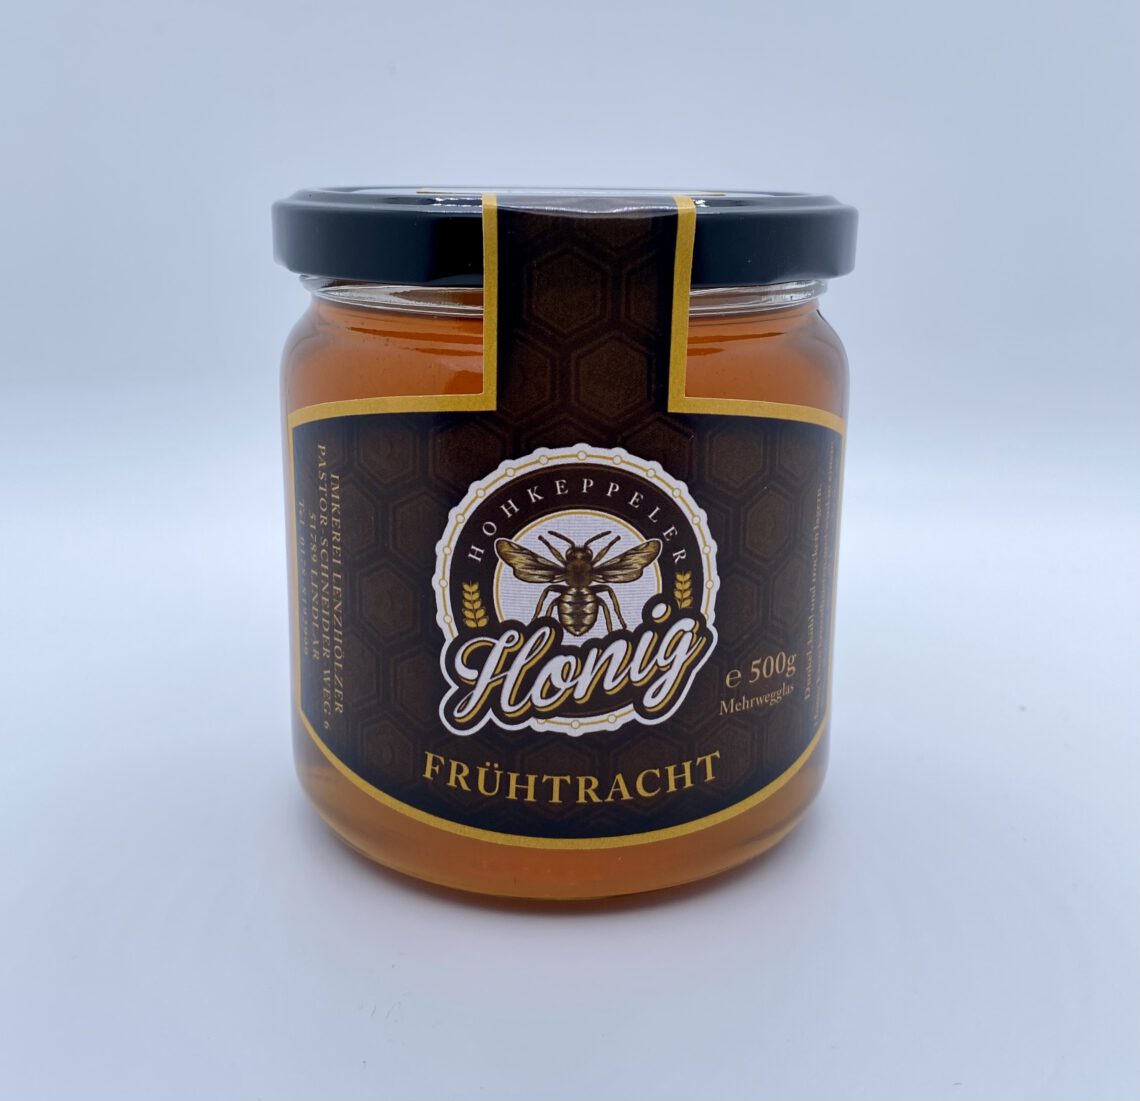 Hohkeppeler Honig Frühtracht 500g